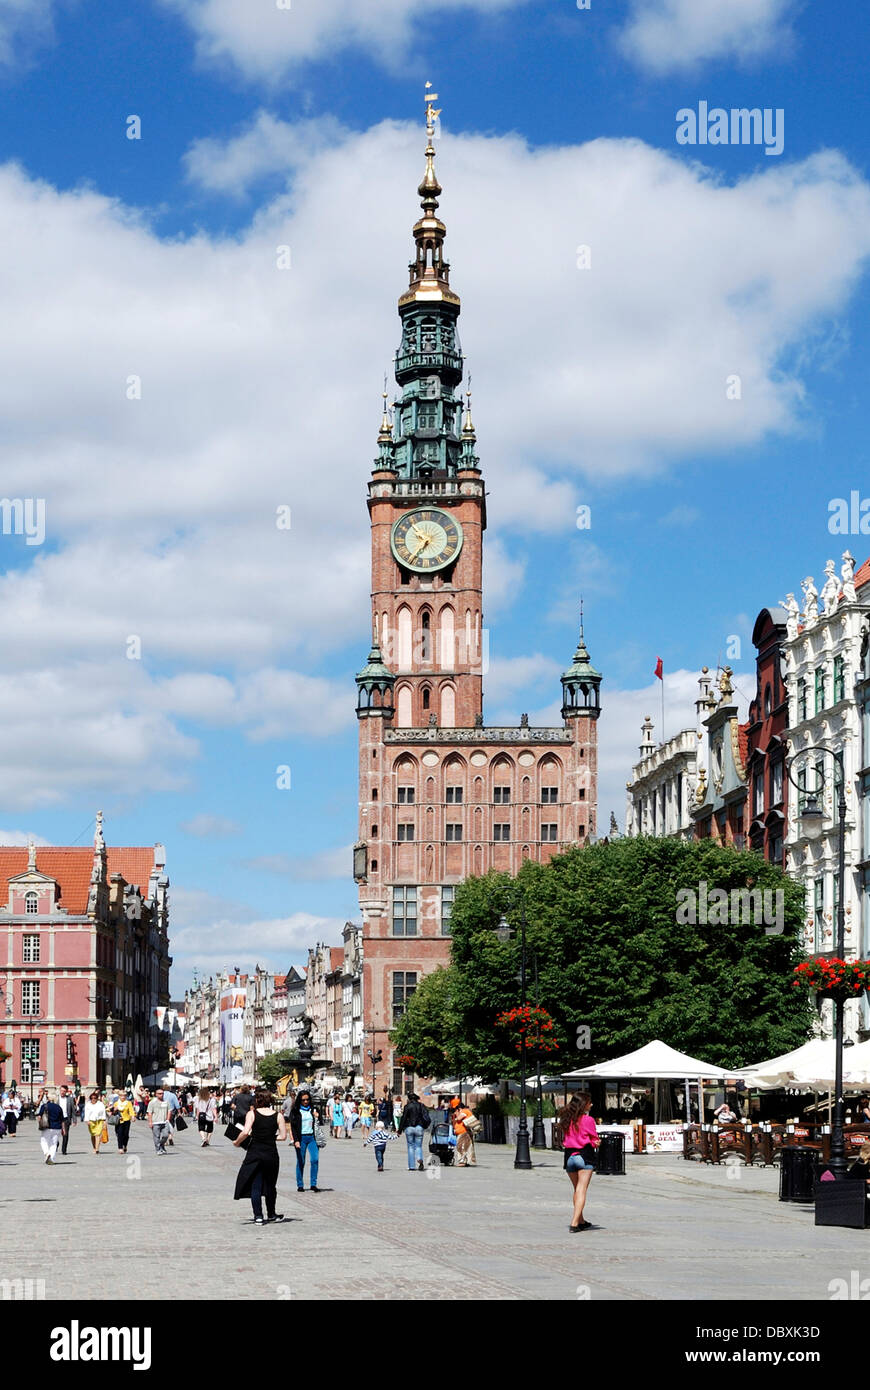 Historique de la vieille ville de Gdansk avec la mairie sur le marché depuis longtemps. Banque D'Images